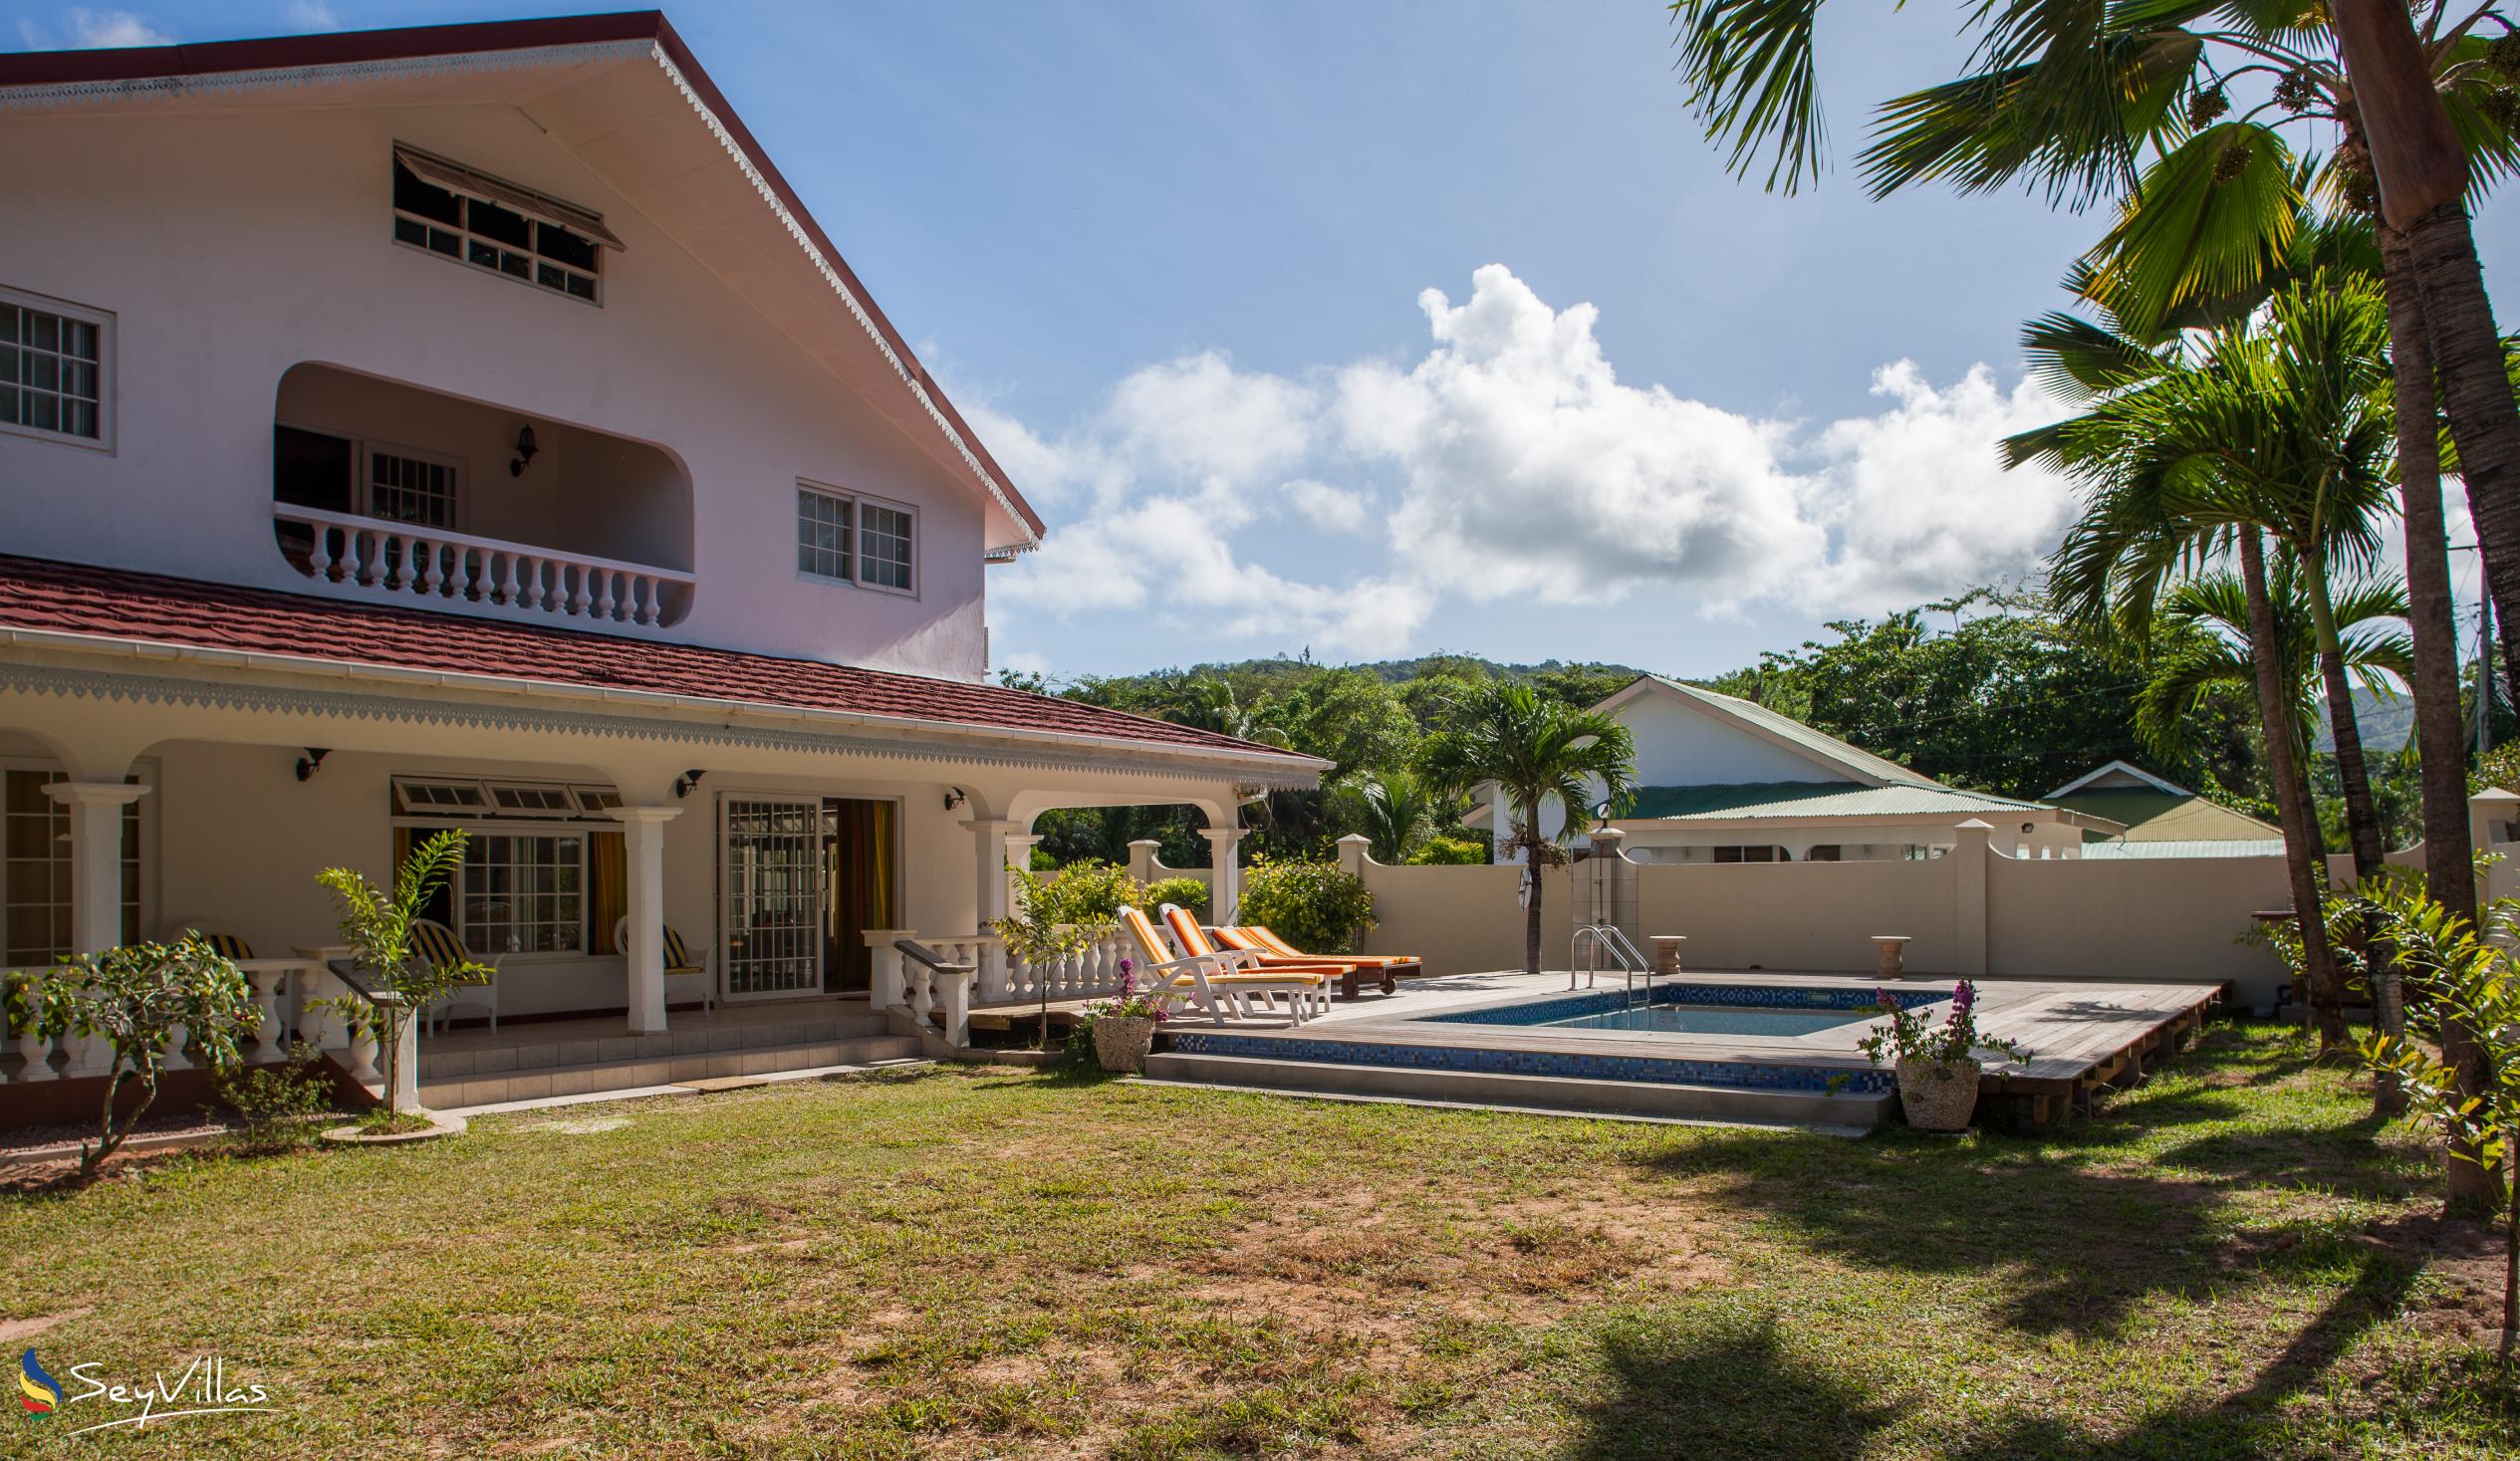 Foto 4: Villa Confort - Esterno - Praslin (Seychelles)